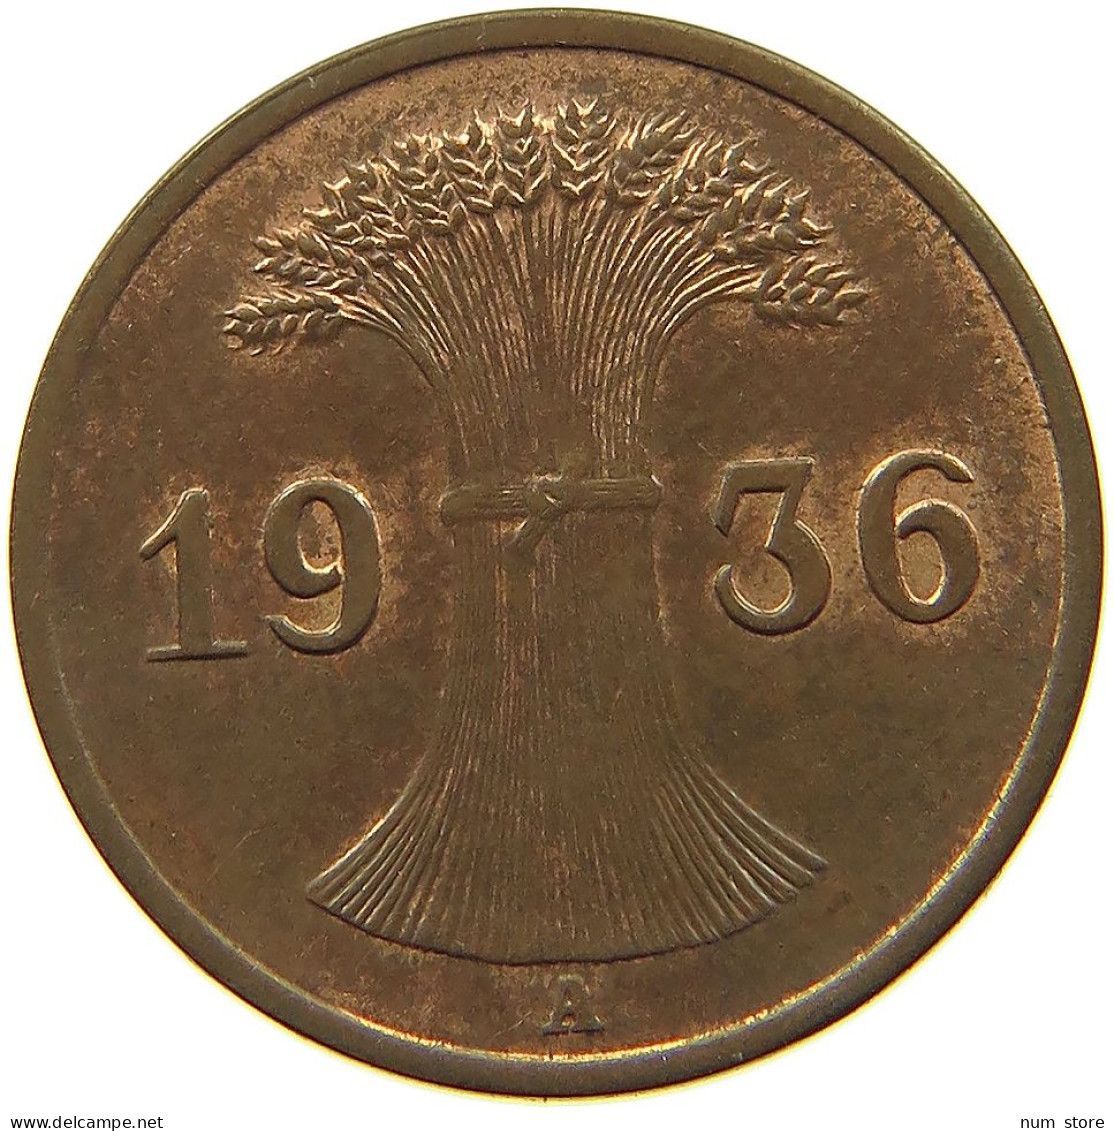 WEIMARER REPUBLIK REICHSPFENNIG 1936 A  #MA 100179 - 1 Rentenpfennig & 1 Reichspfennig